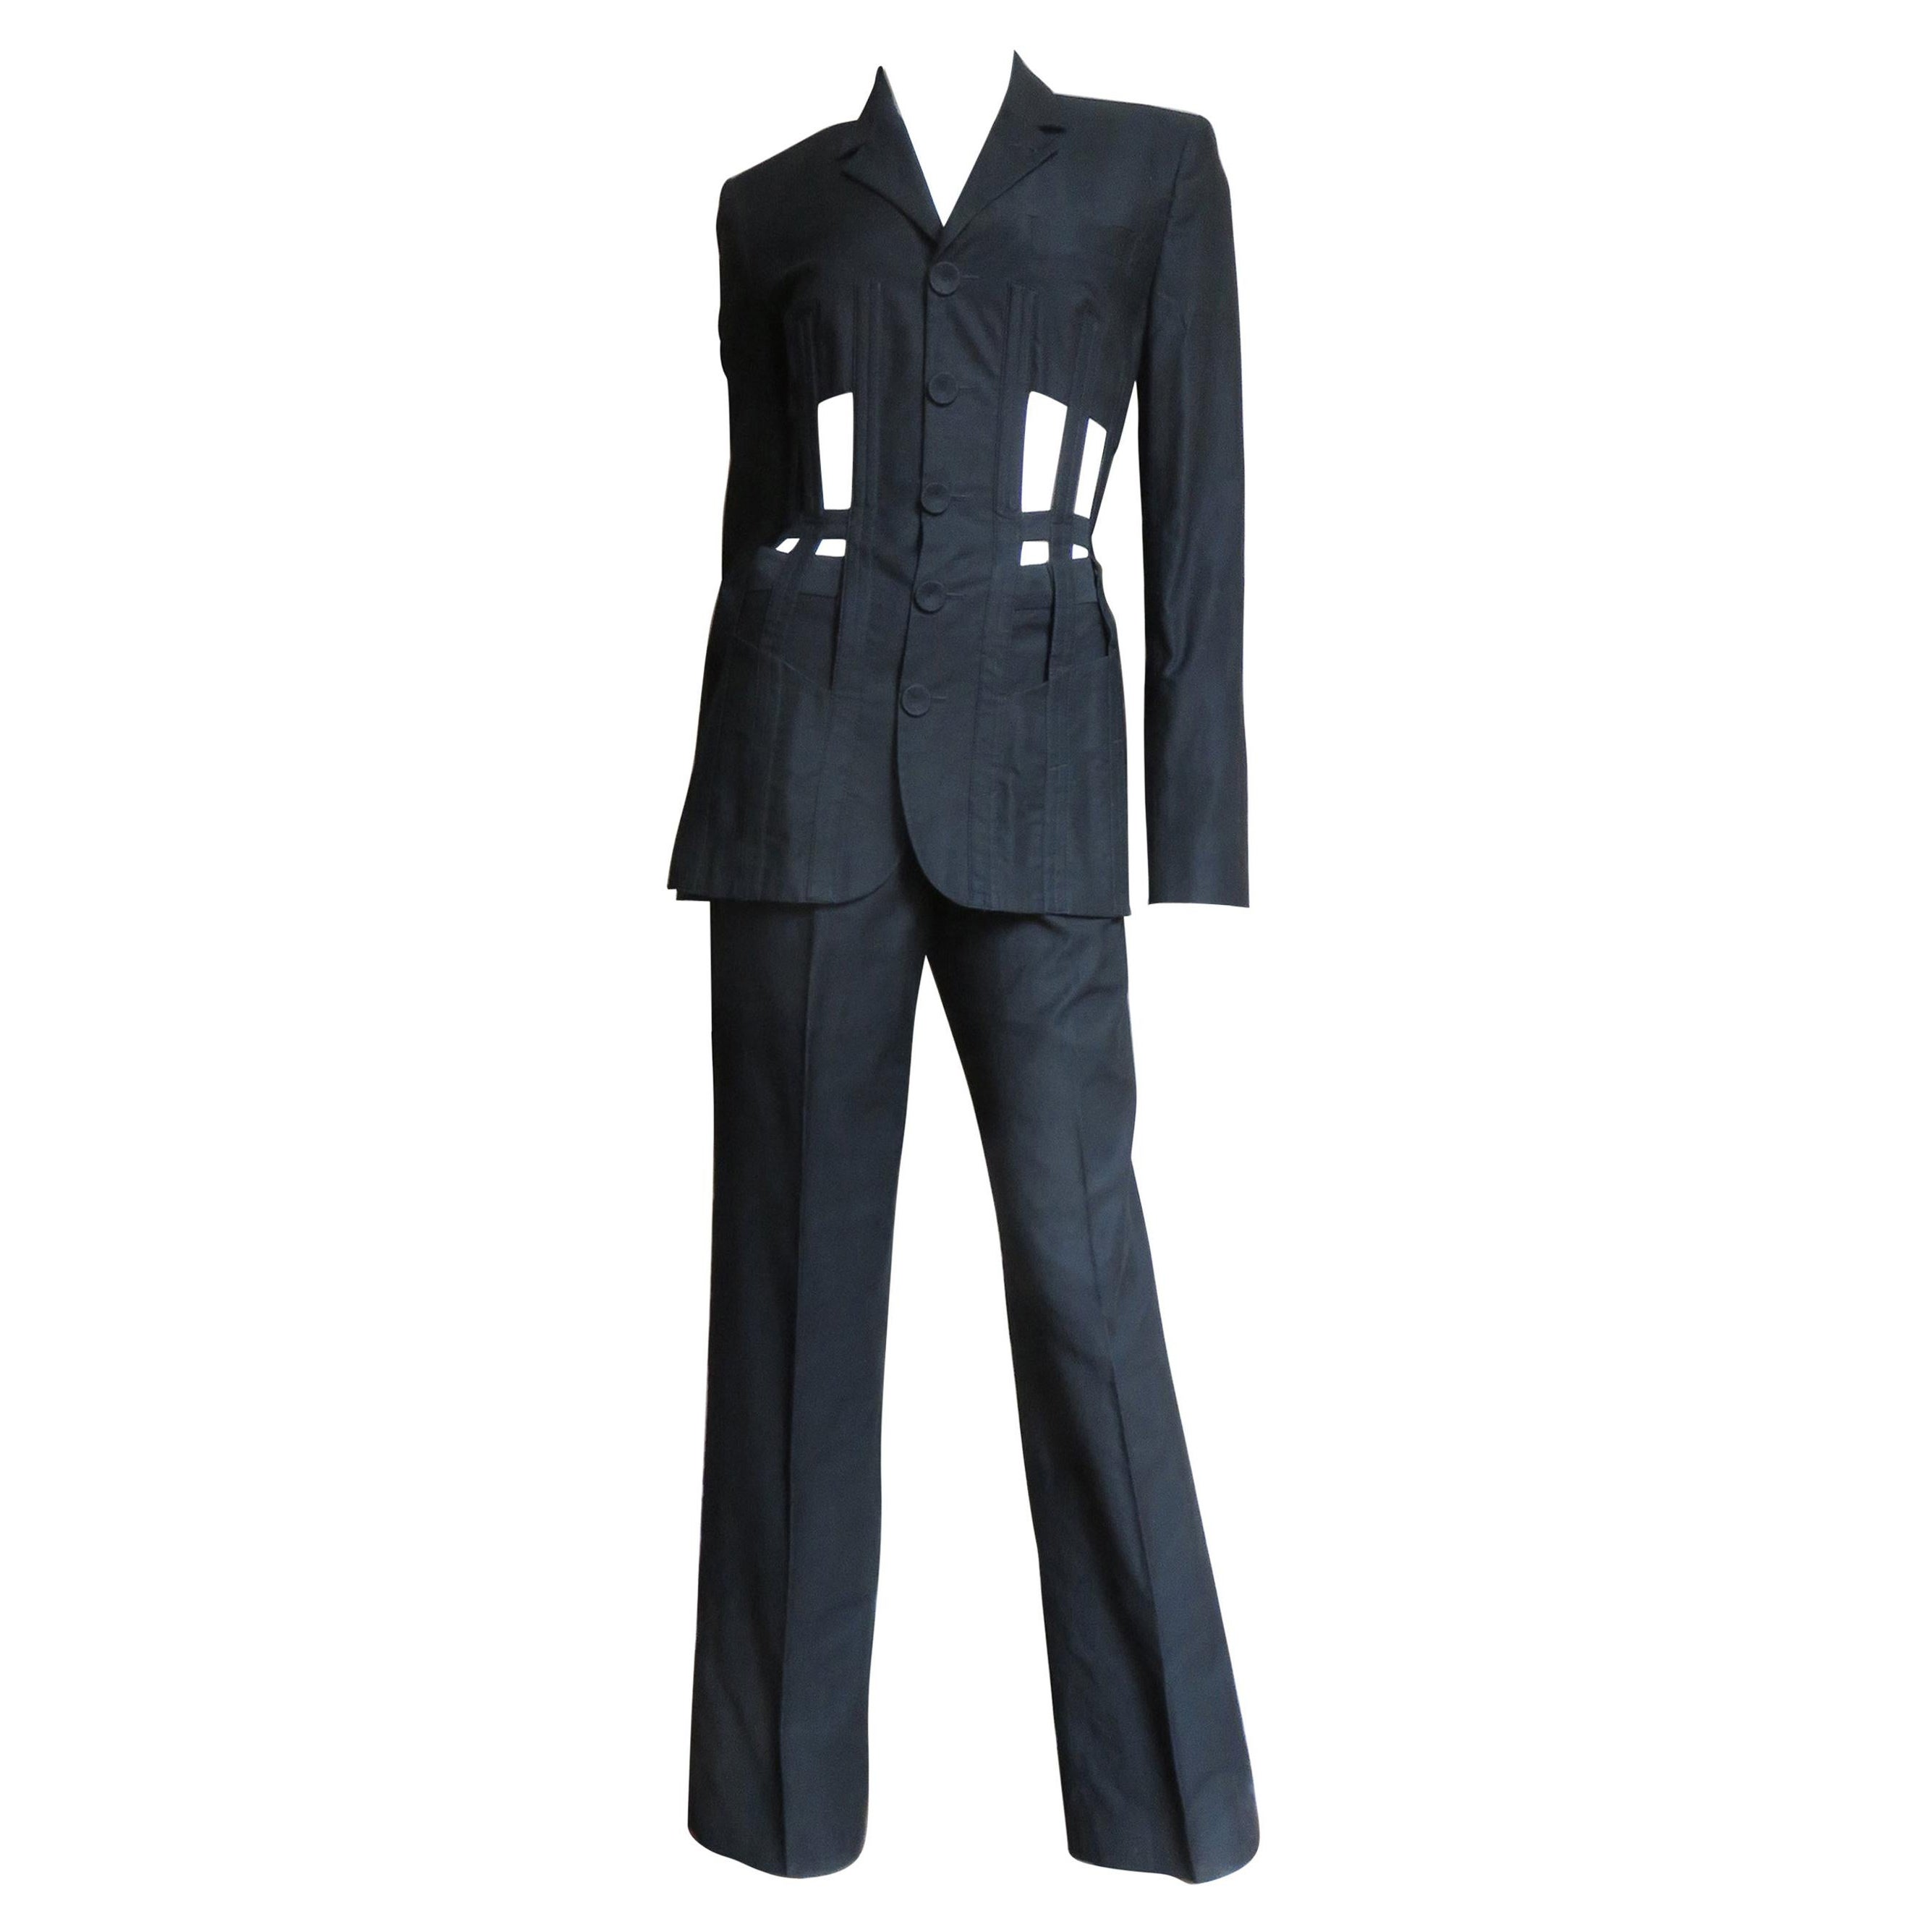 Jean Paul Gaultier Iconic Cage Corset lace up Jacket Pant Suit S/S 1989